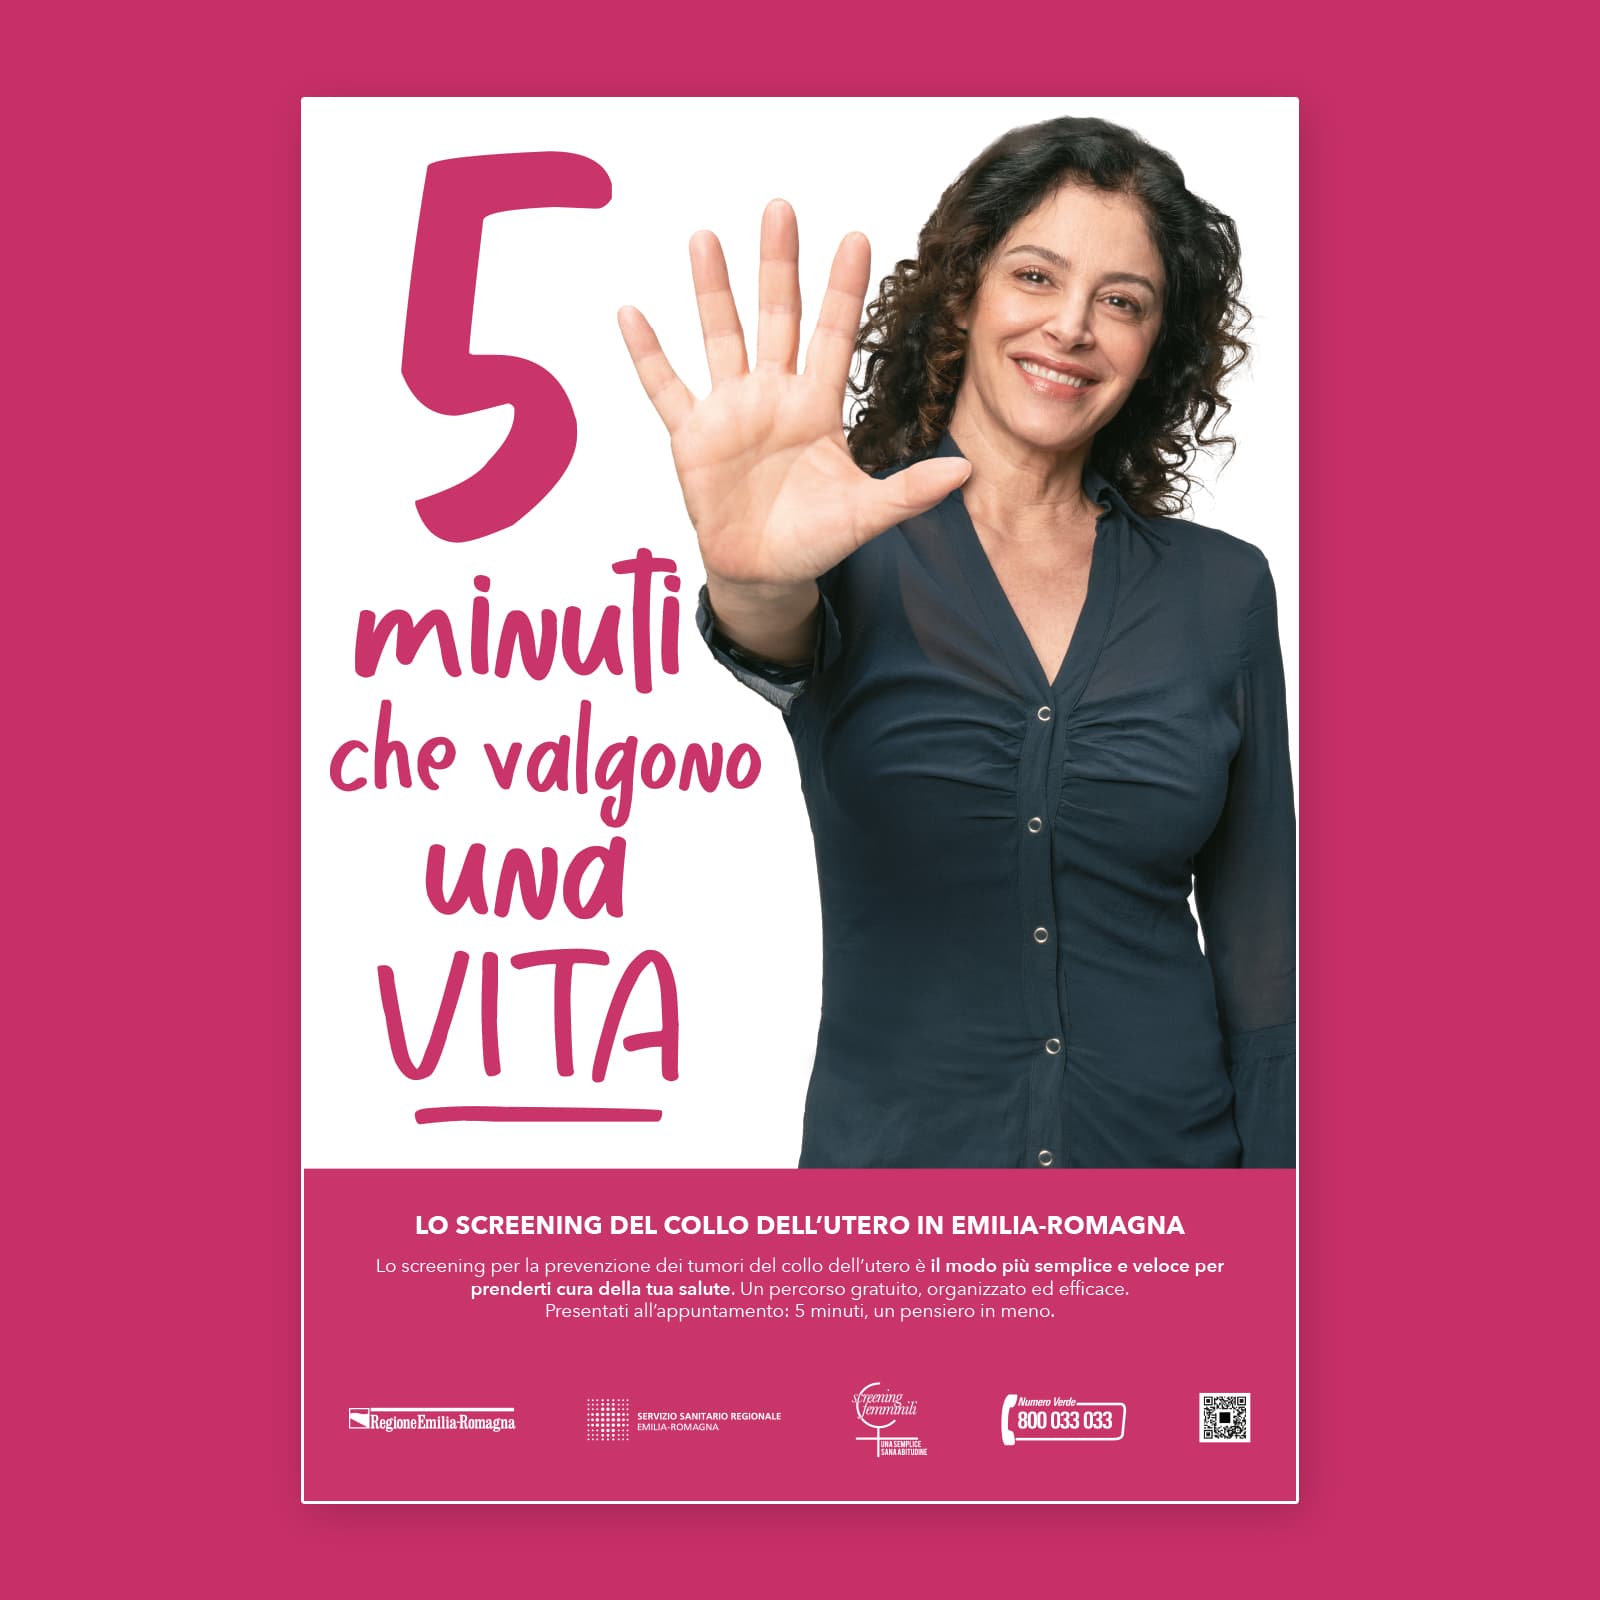 Magilla Case study: Regione Emilia-Romagna